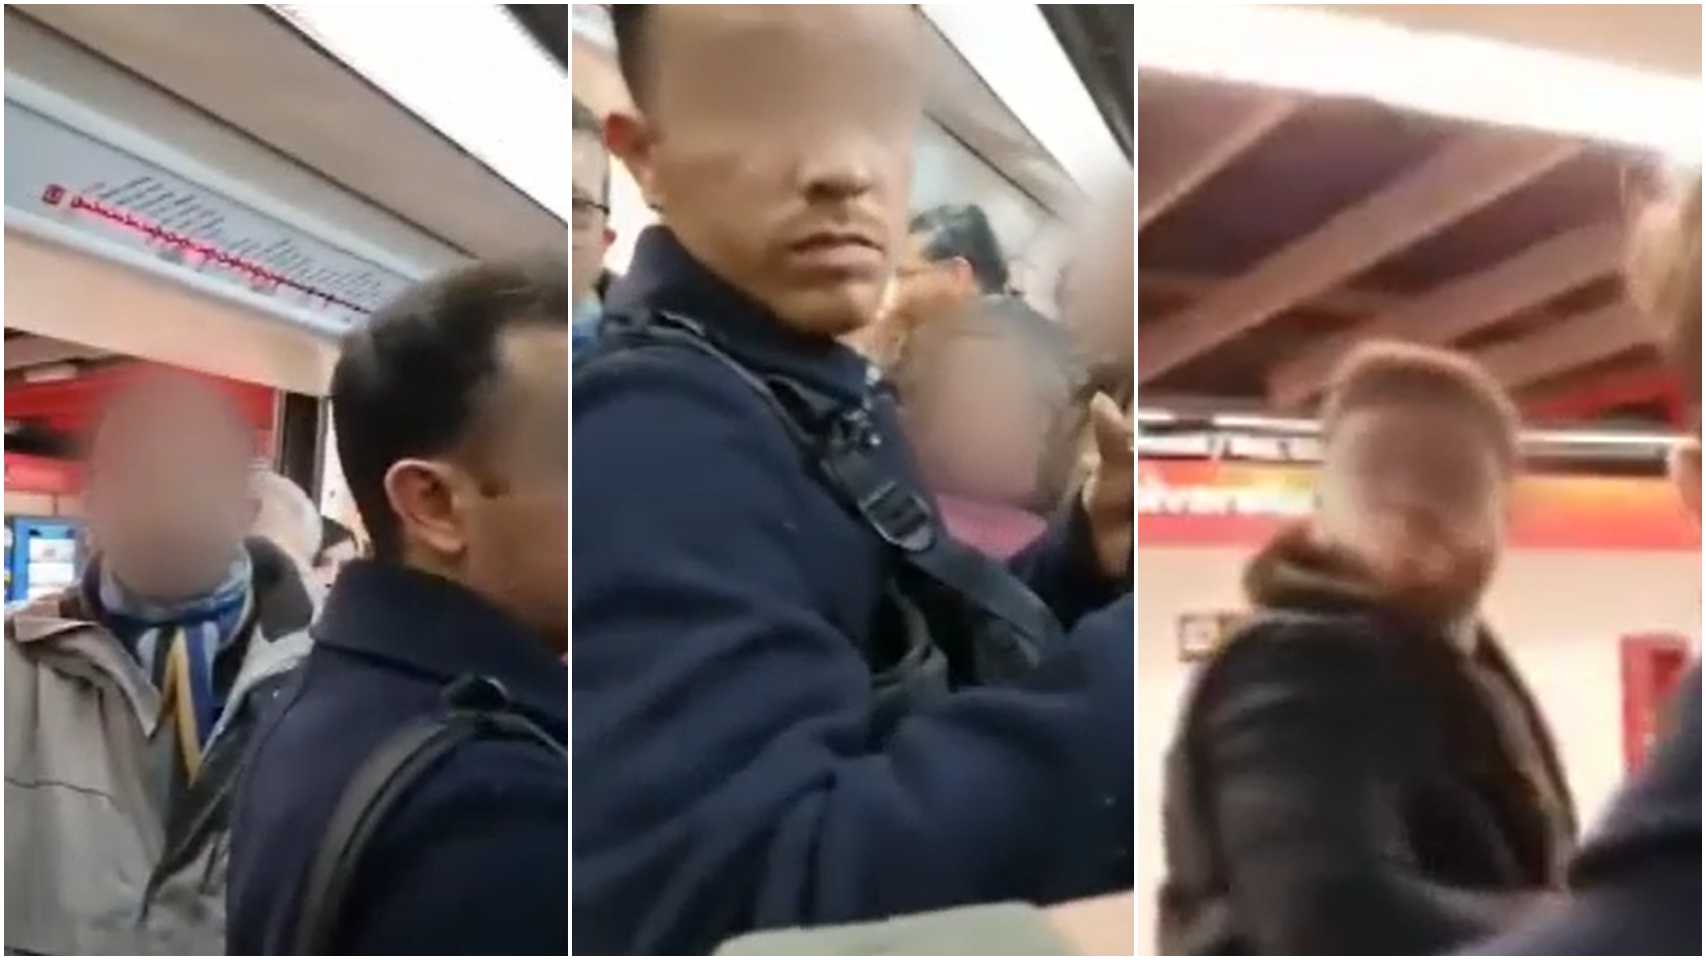 El vídeo fue grabado por los pasajeros del metro que se percataron del robo.